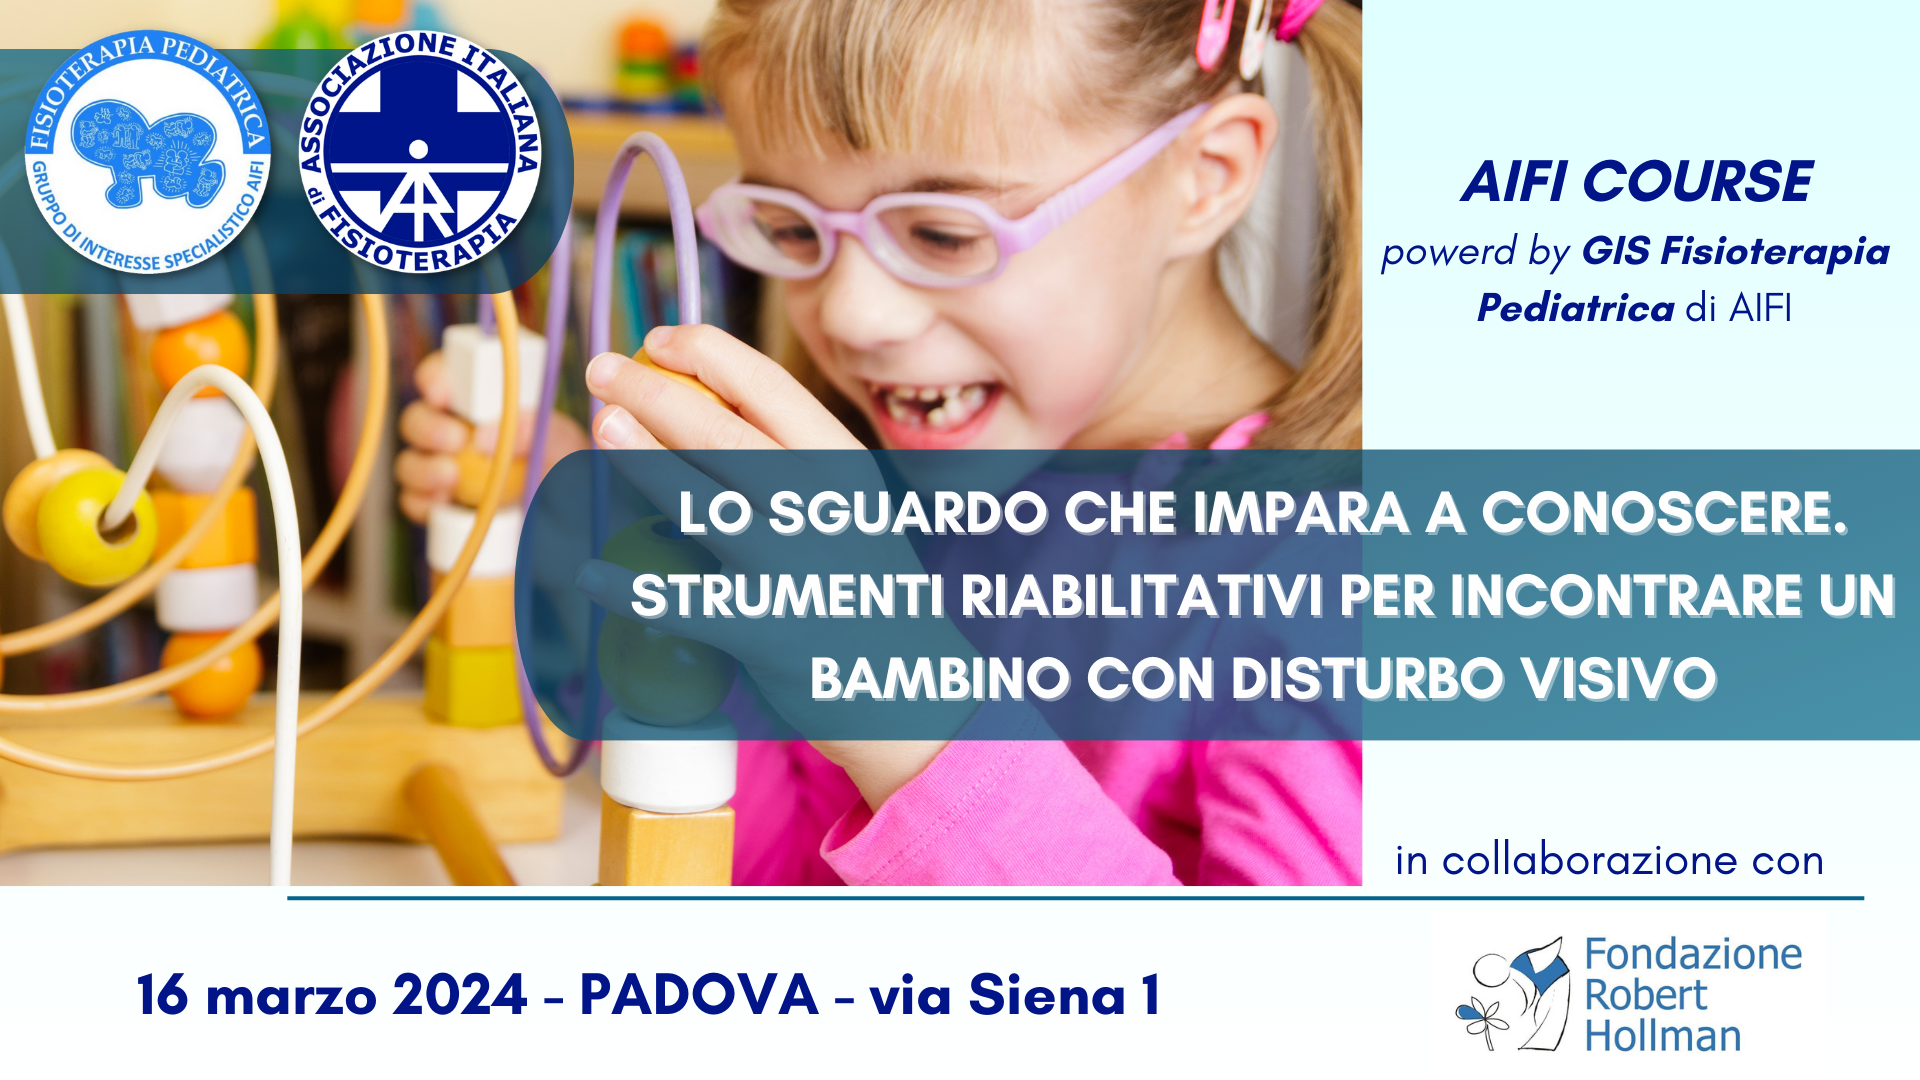 AIFI Course – “Lo sguardo che impara a conoscere. Strumenti riabilitativi per incontrare un bambino con disturbo visivo” 16 Marzo 2024 – Padova